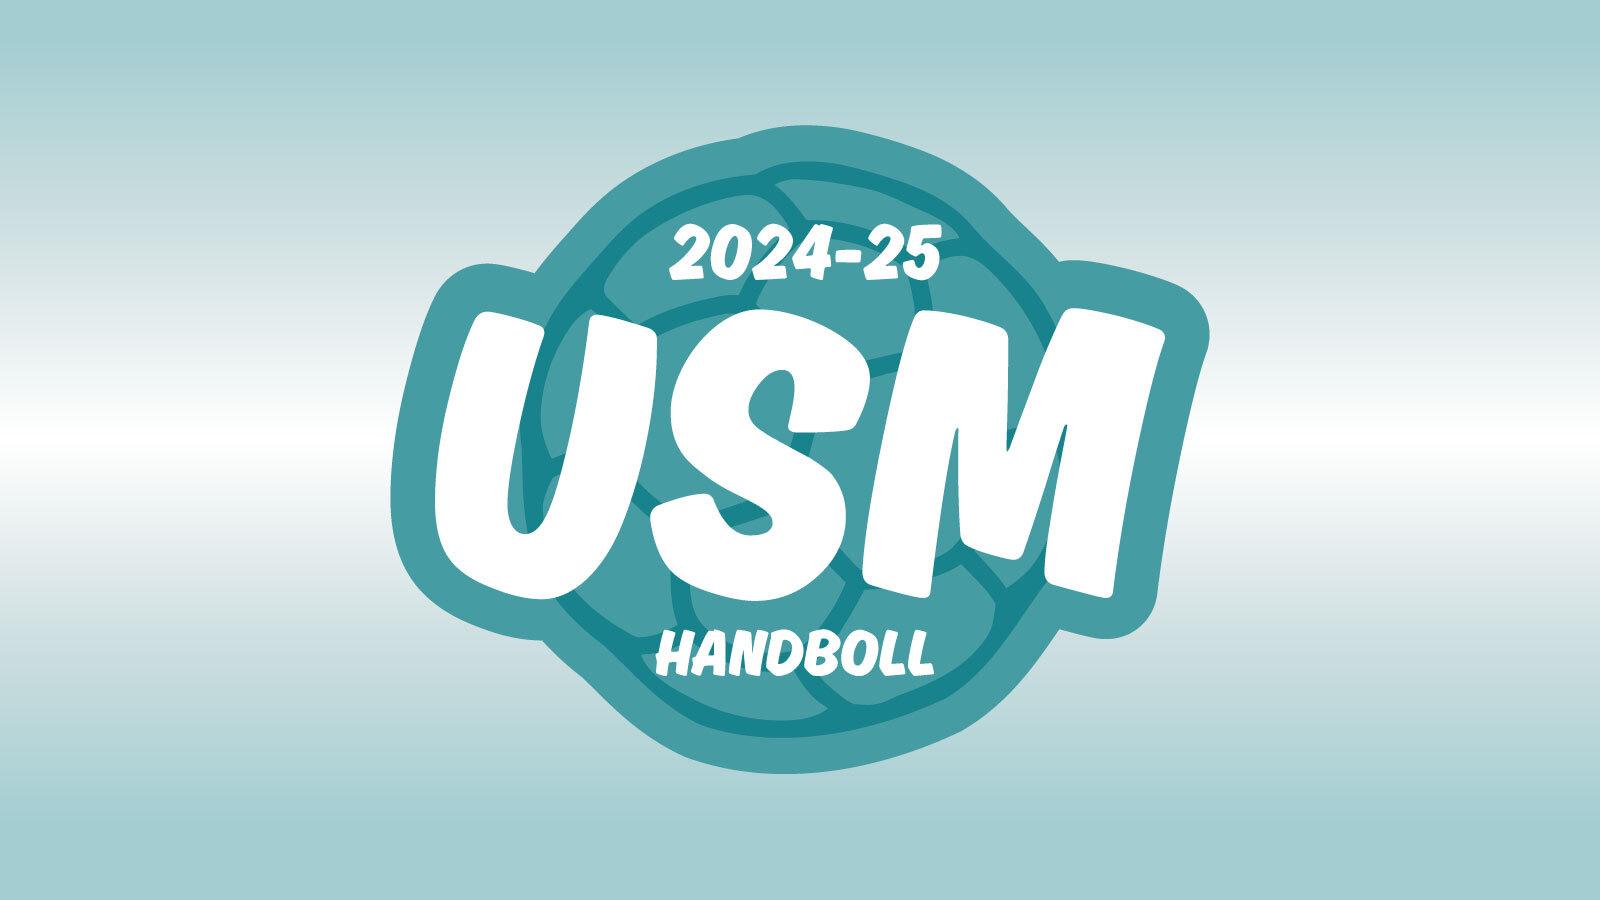 Logotyp för tävlingen Gjensidige USM